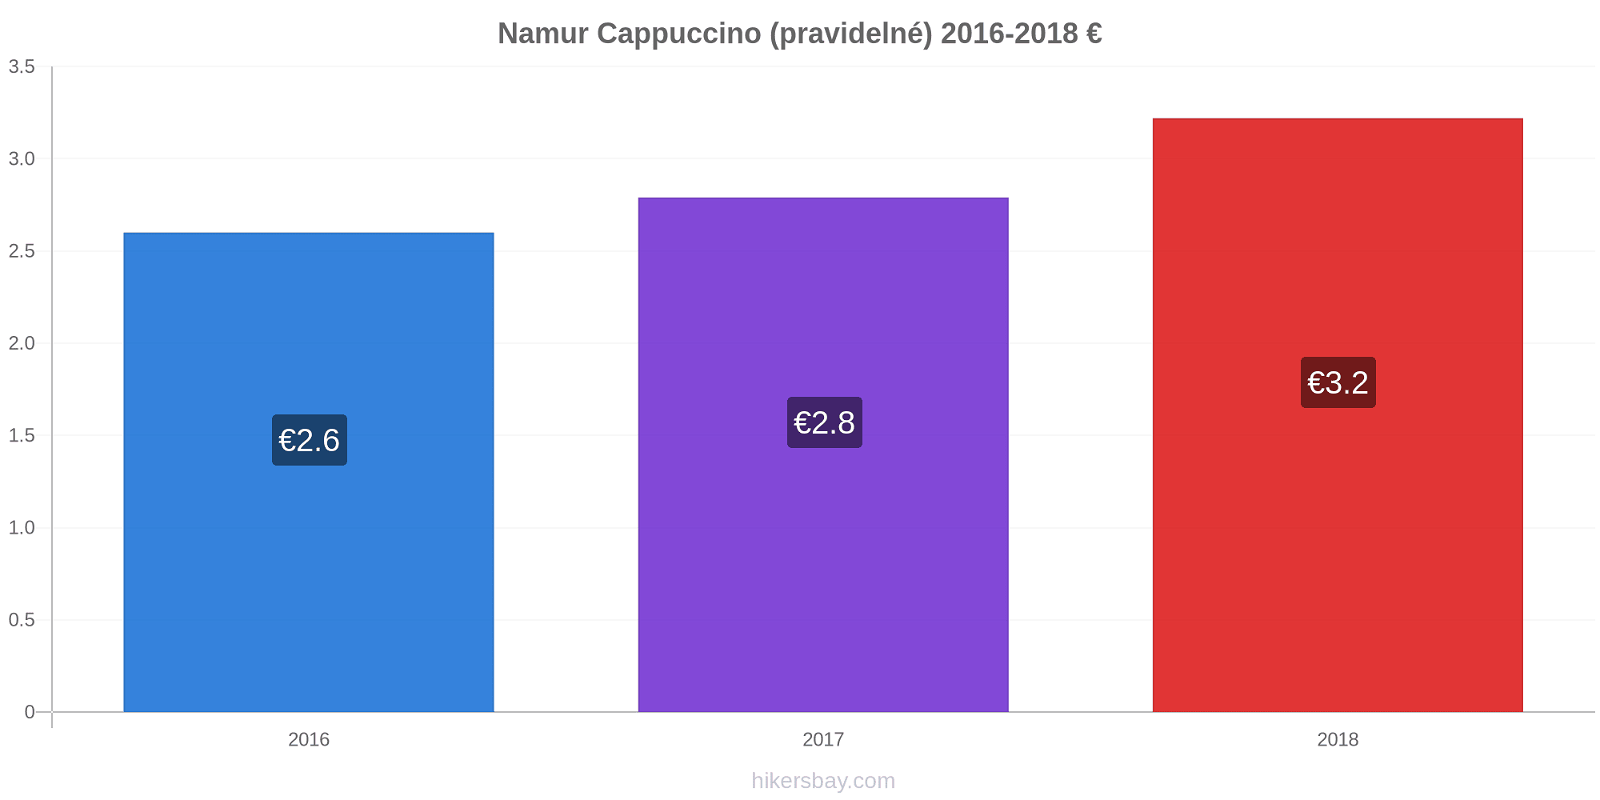 Namur změny cen Cappuccino (pravidelné) hikersbay.com